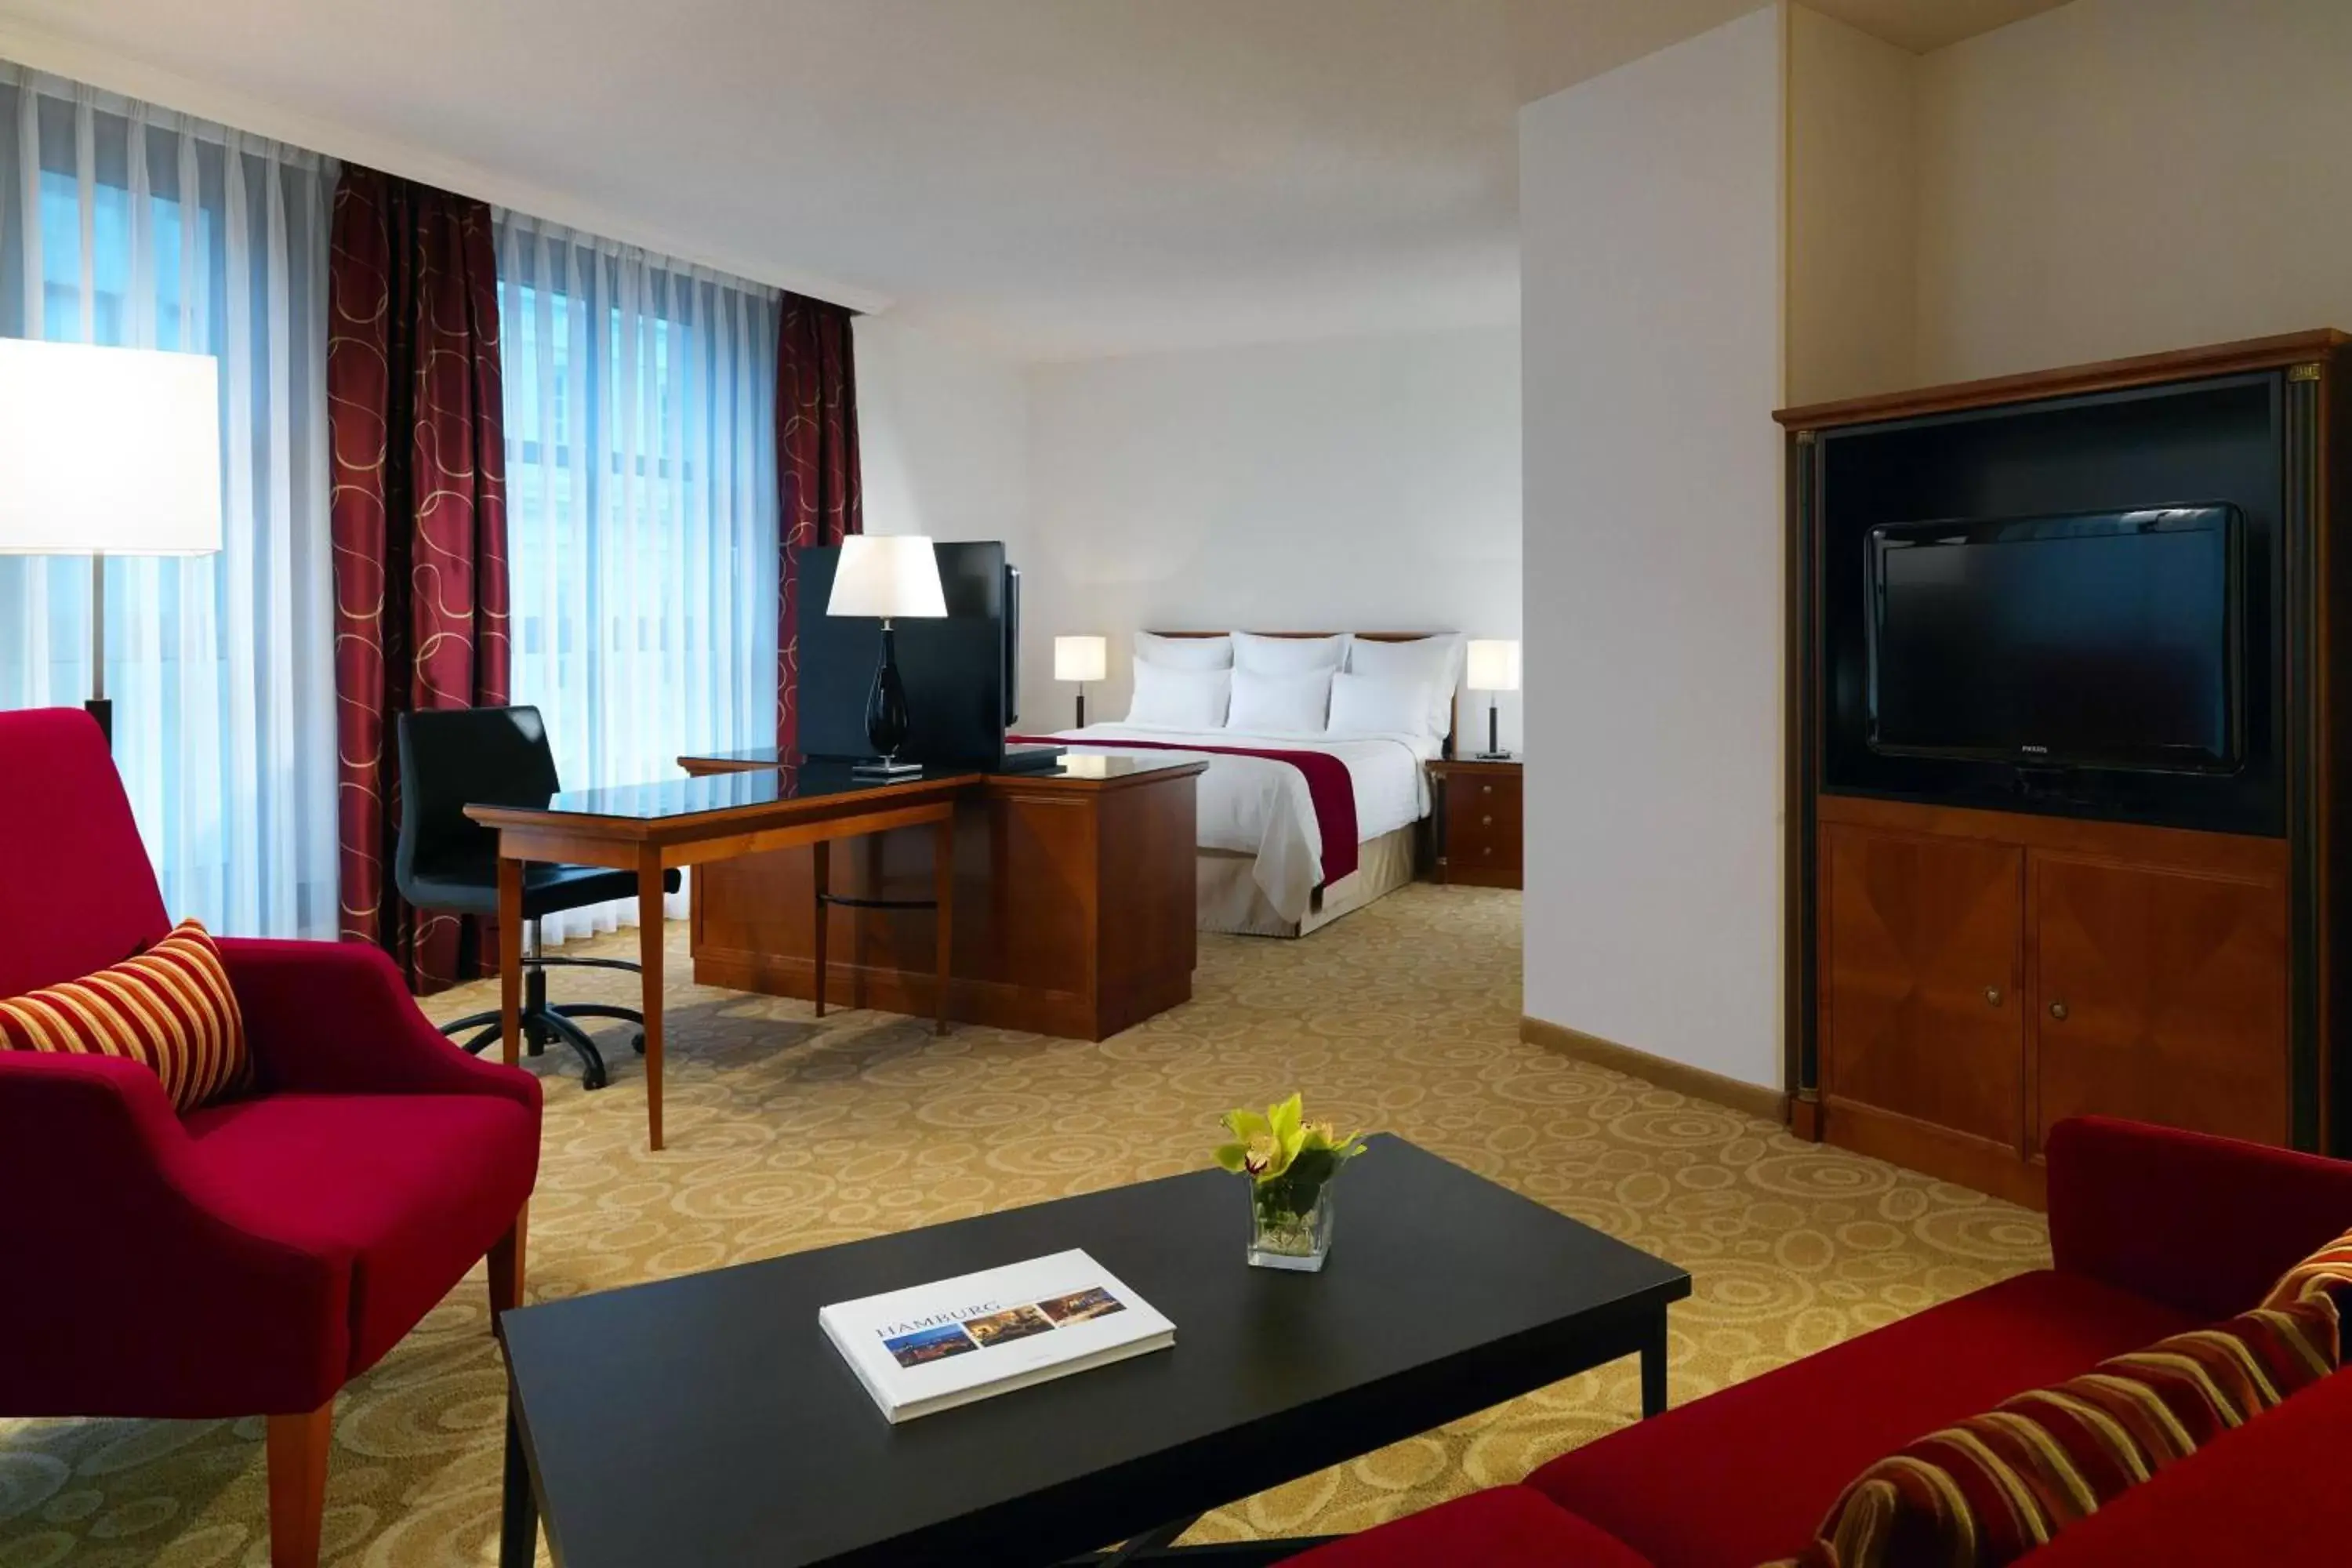 Bedroom, TV/Entertainment Center in Hamburg Marriott Hotel